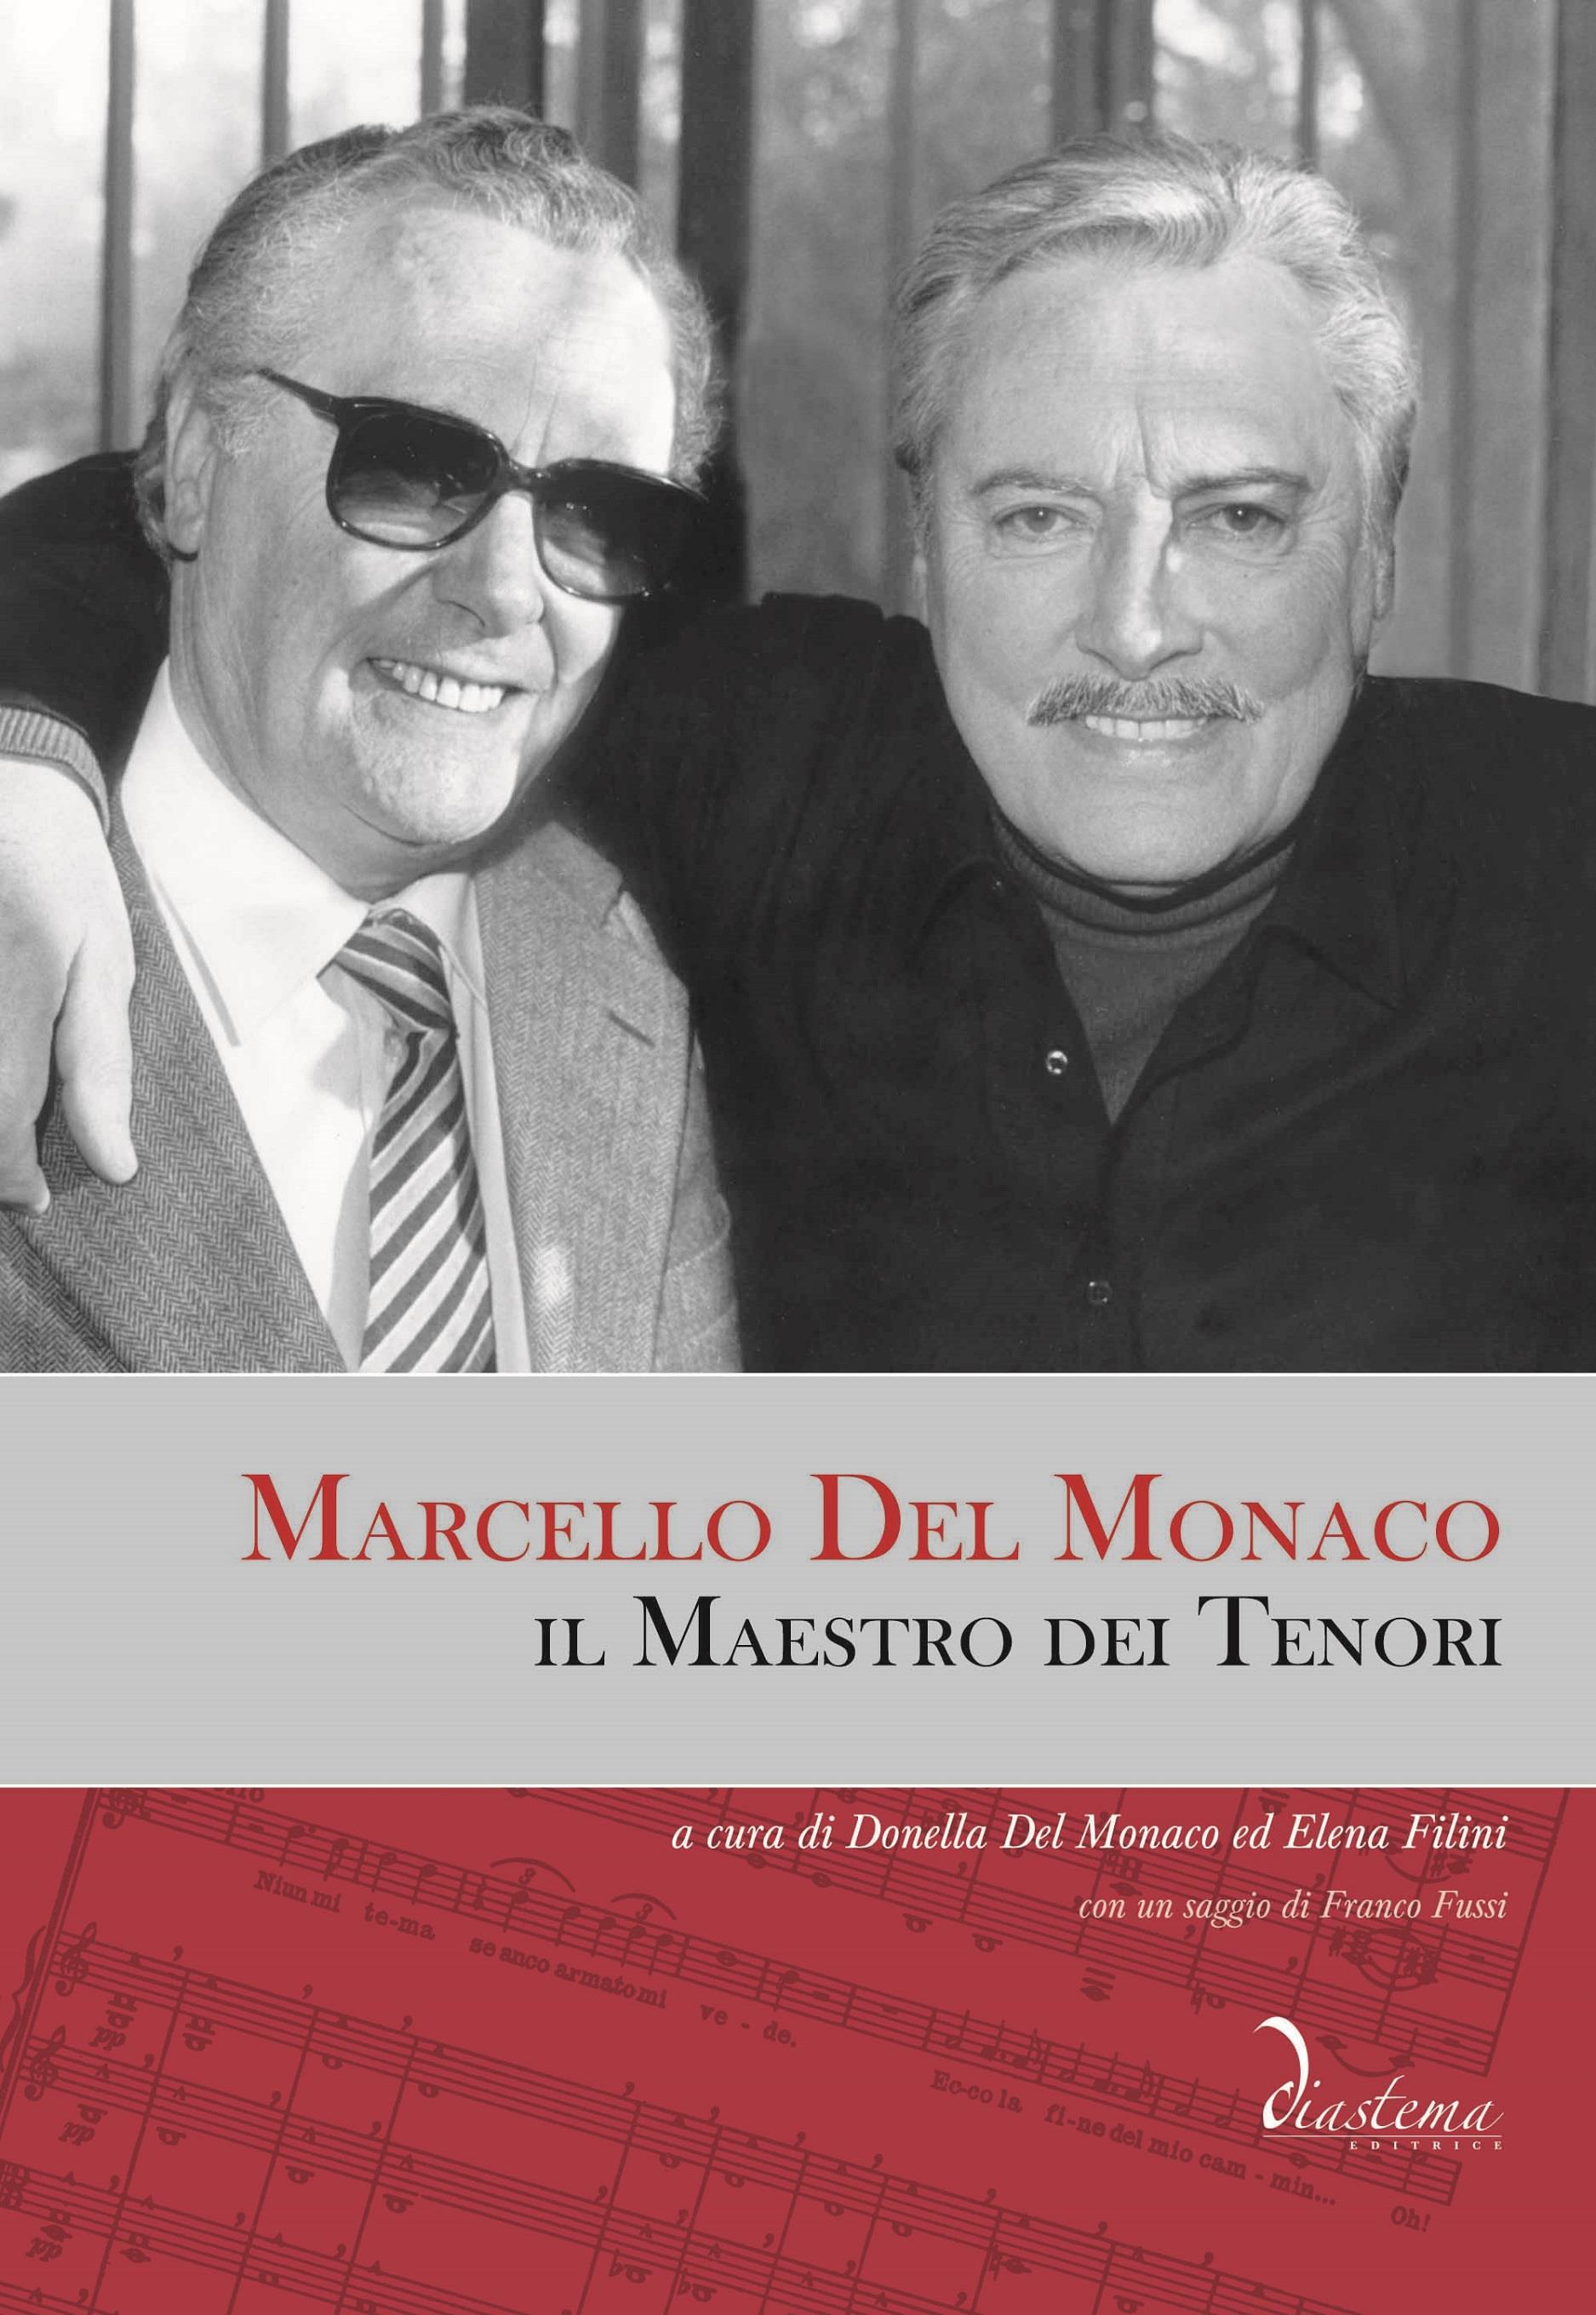 Marcello Del Monaco, il Maestro dei Tenori